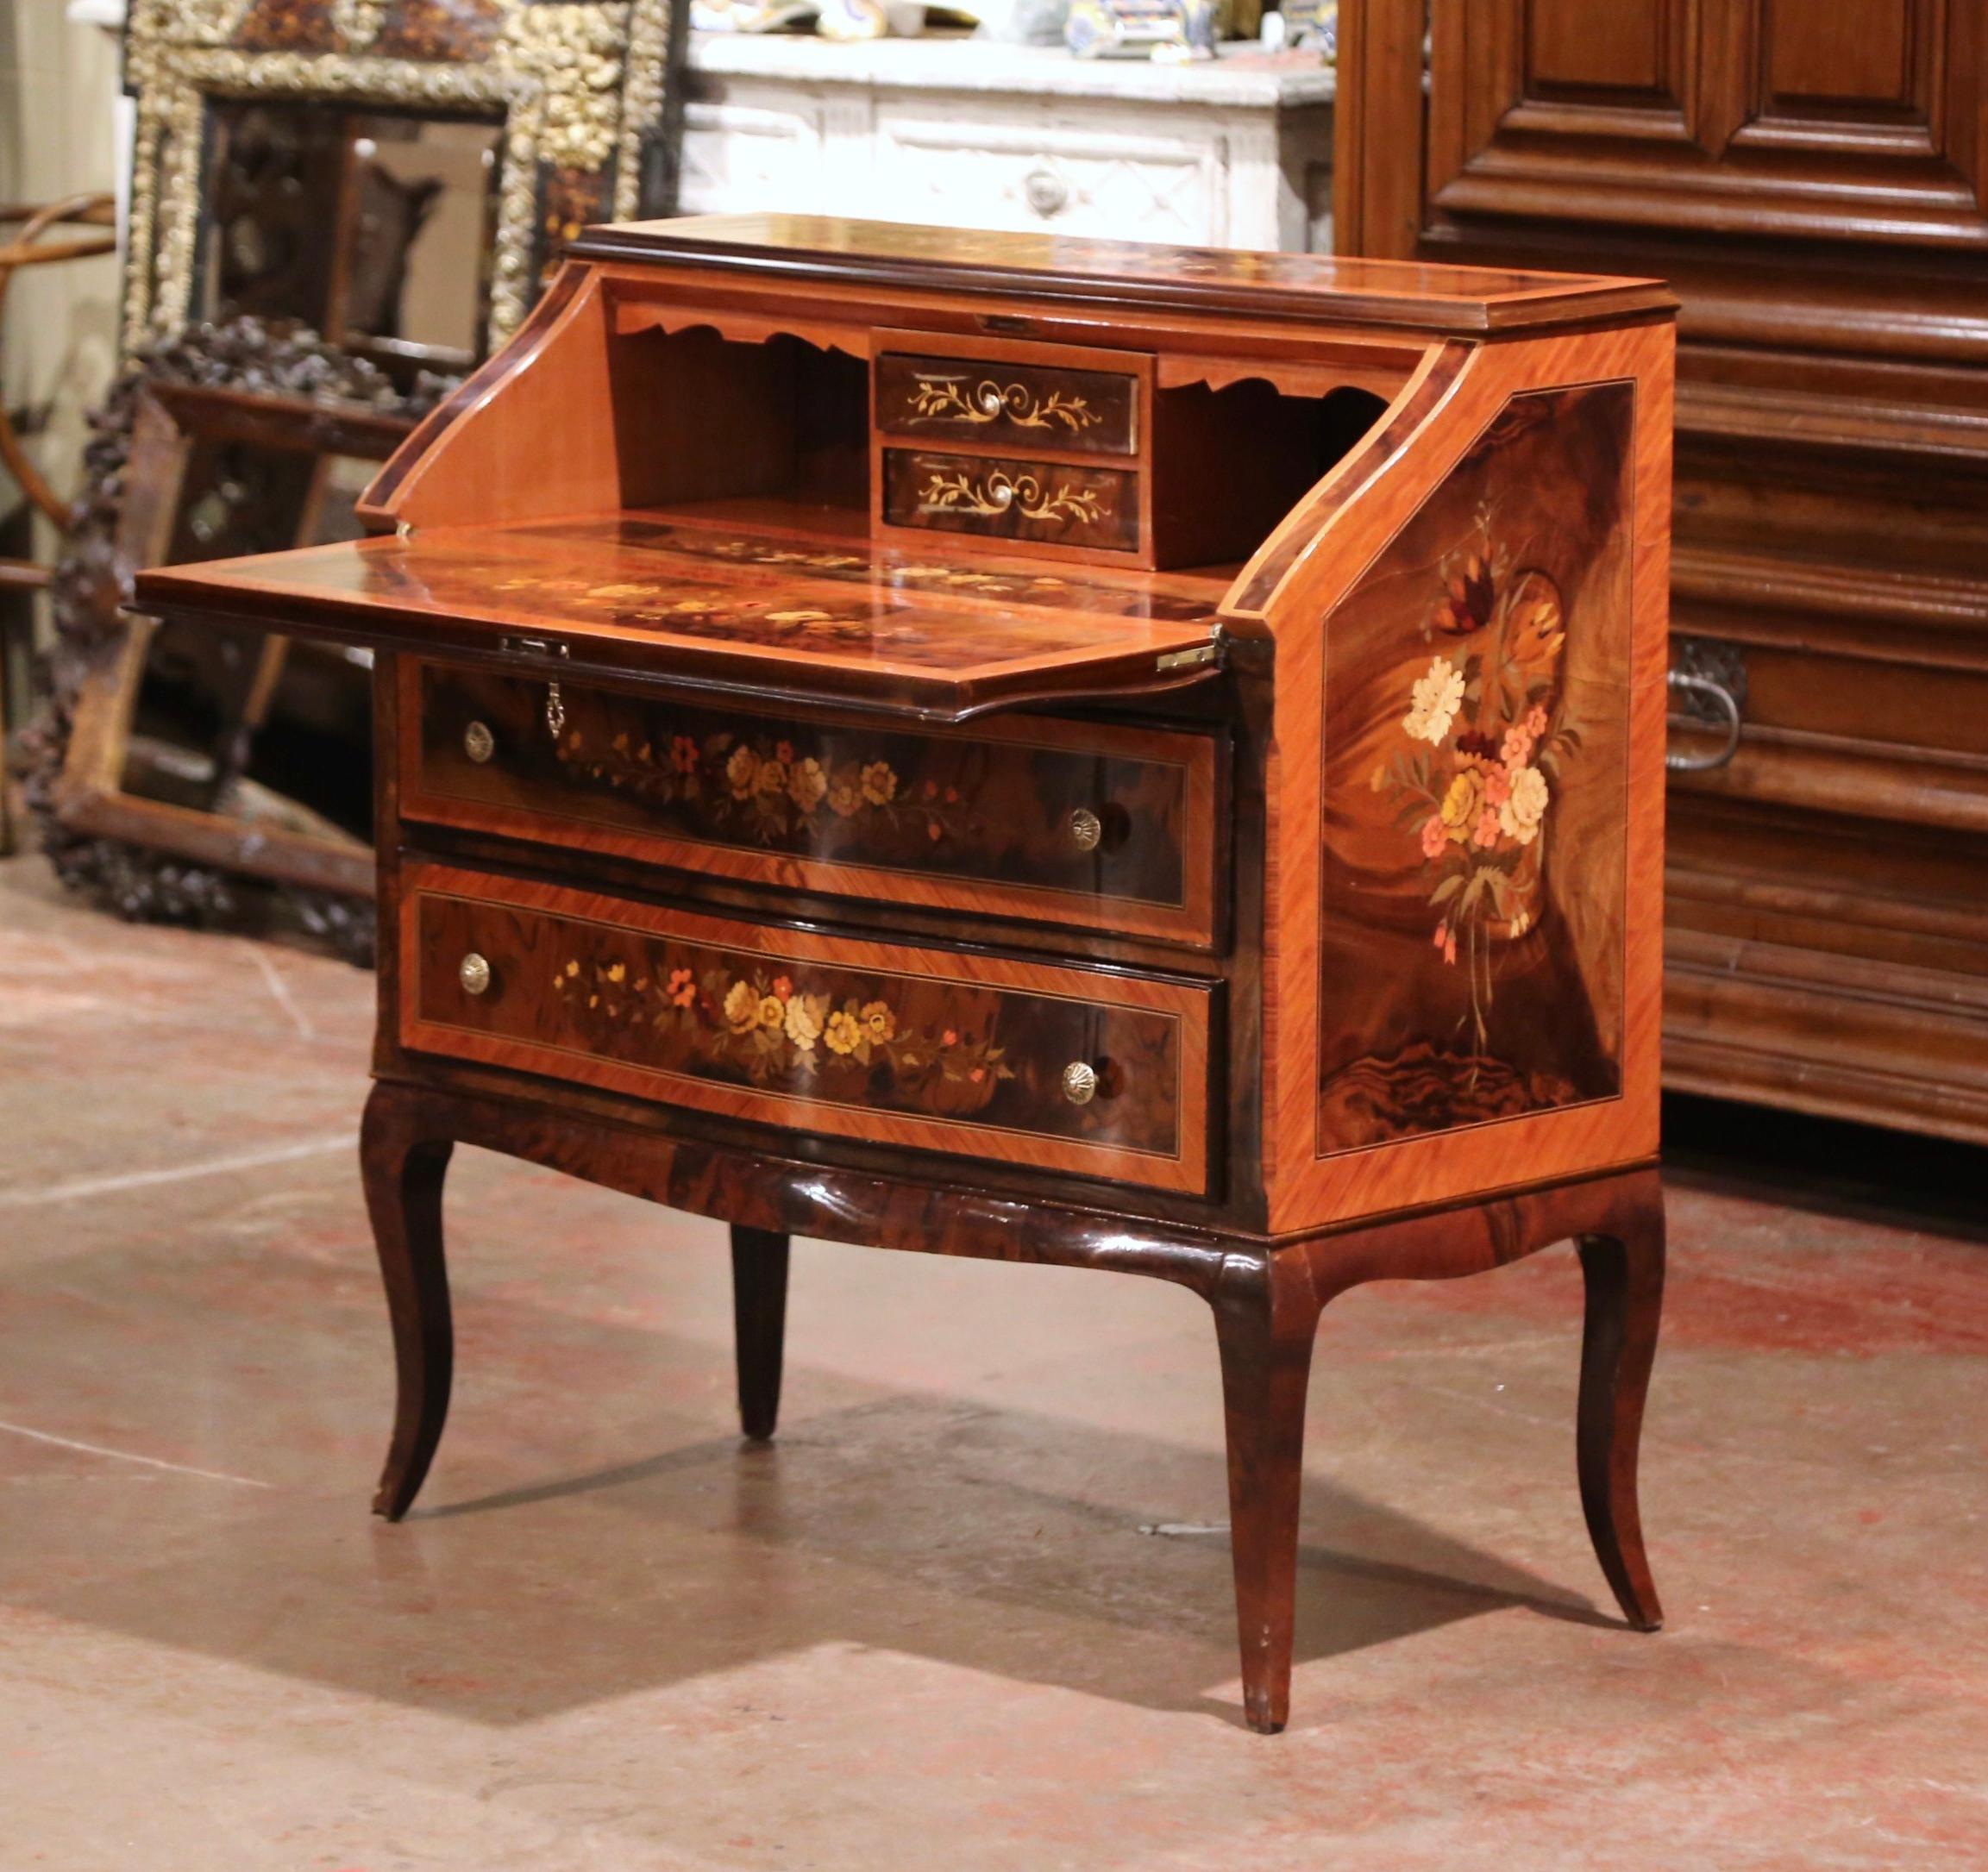 This elegant antique desk or 